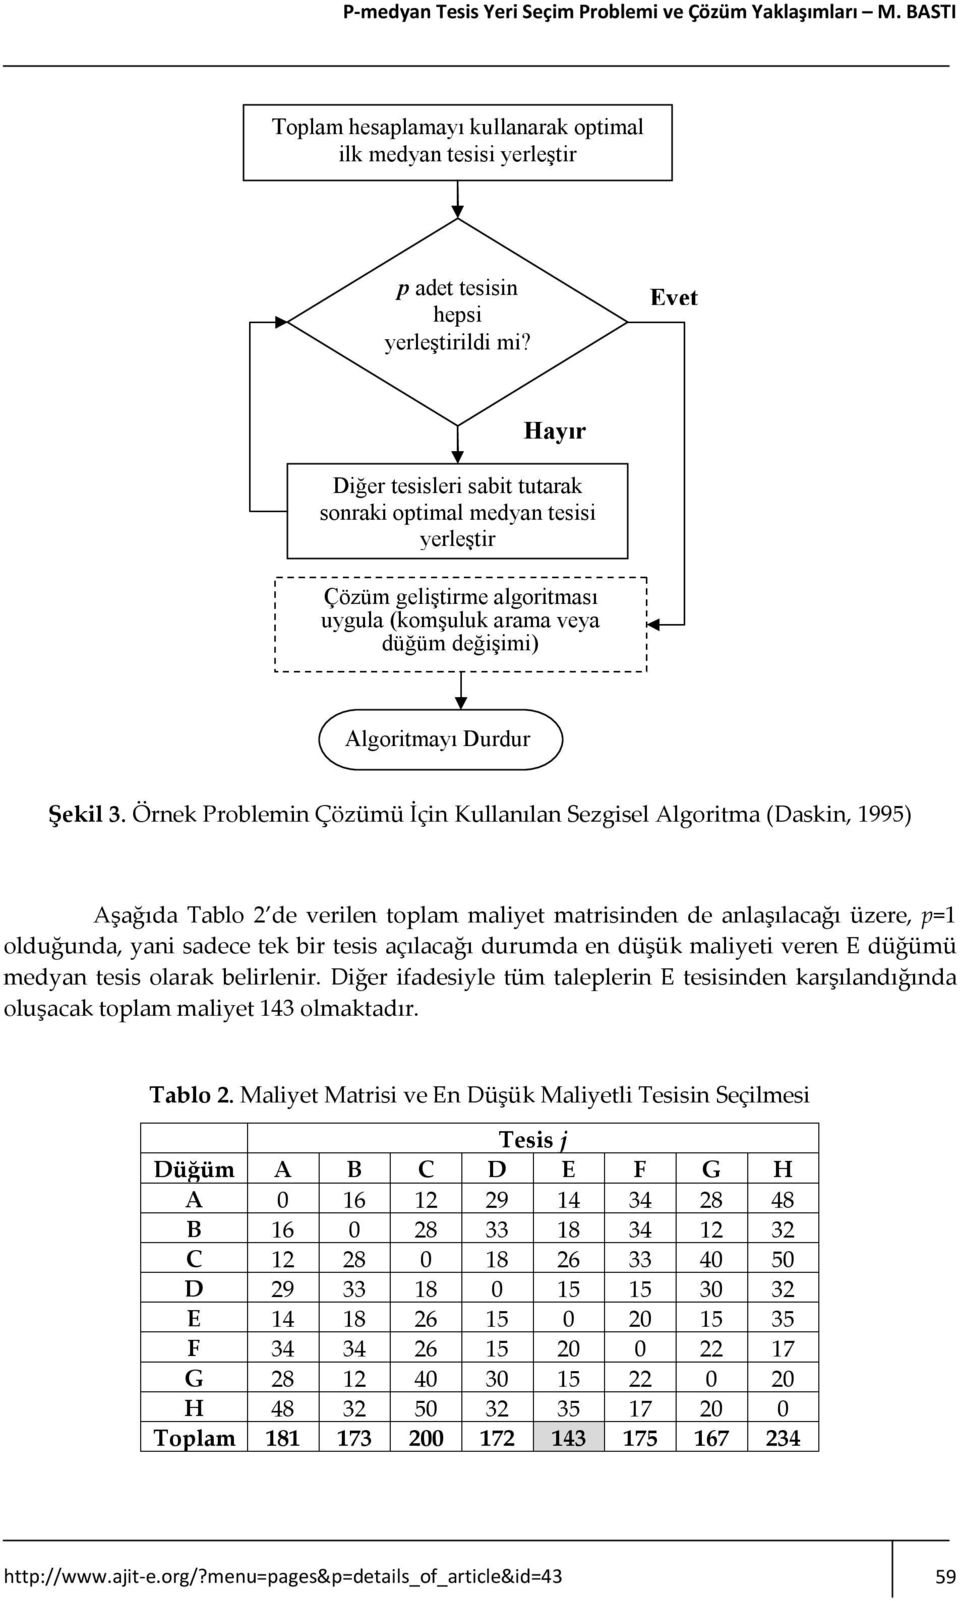 Örnek Problemin Çözümü İçin Kullanılan Sezgisel Algoritma (Daskin, 1995) Aşağıda Tablo 2 de verilen toplam maliyet matrisinden de anlaşılacağı üzere, p=1 olduğunda, yani sadece tek bir tesis